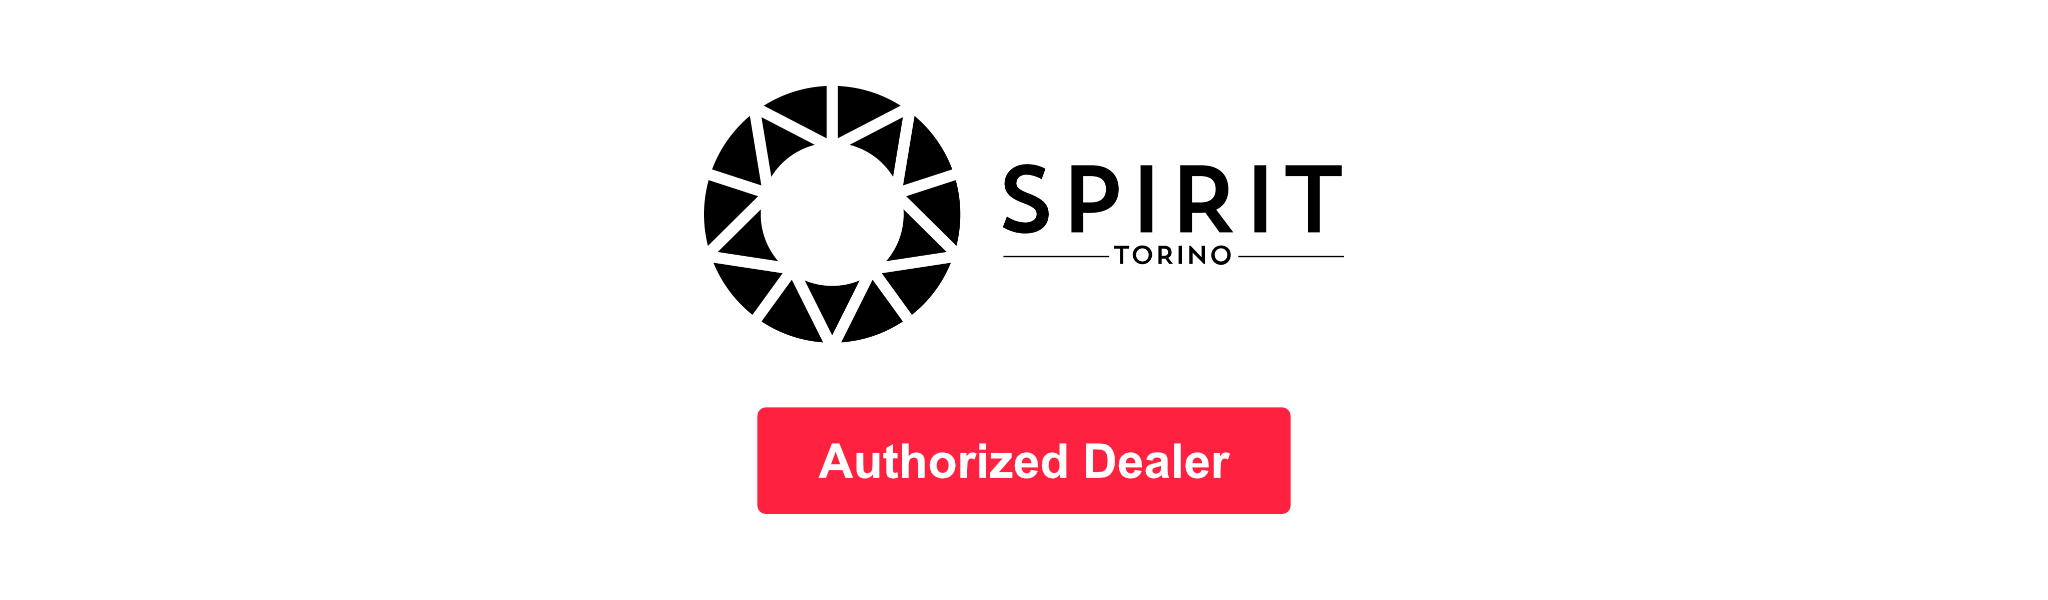 Authorized Dealer of Spirit Torino